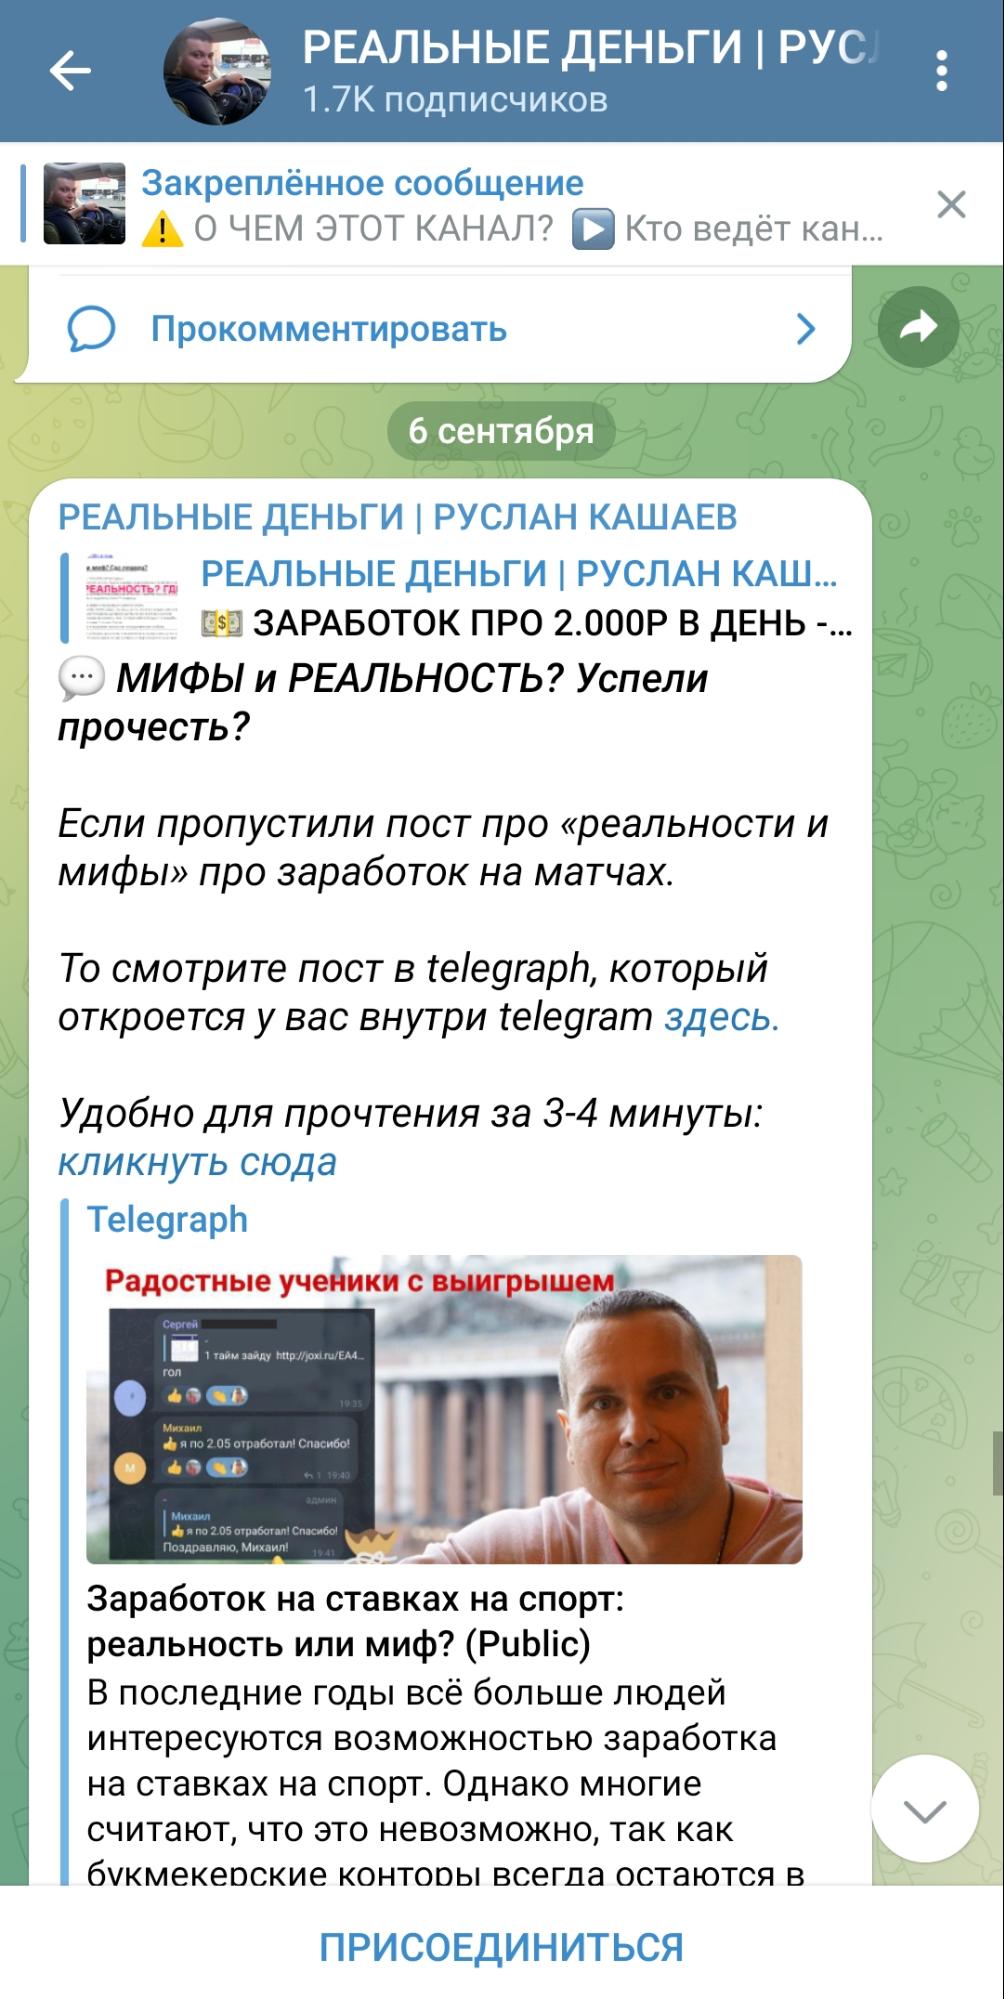 Руслан Кашаев телеграмм